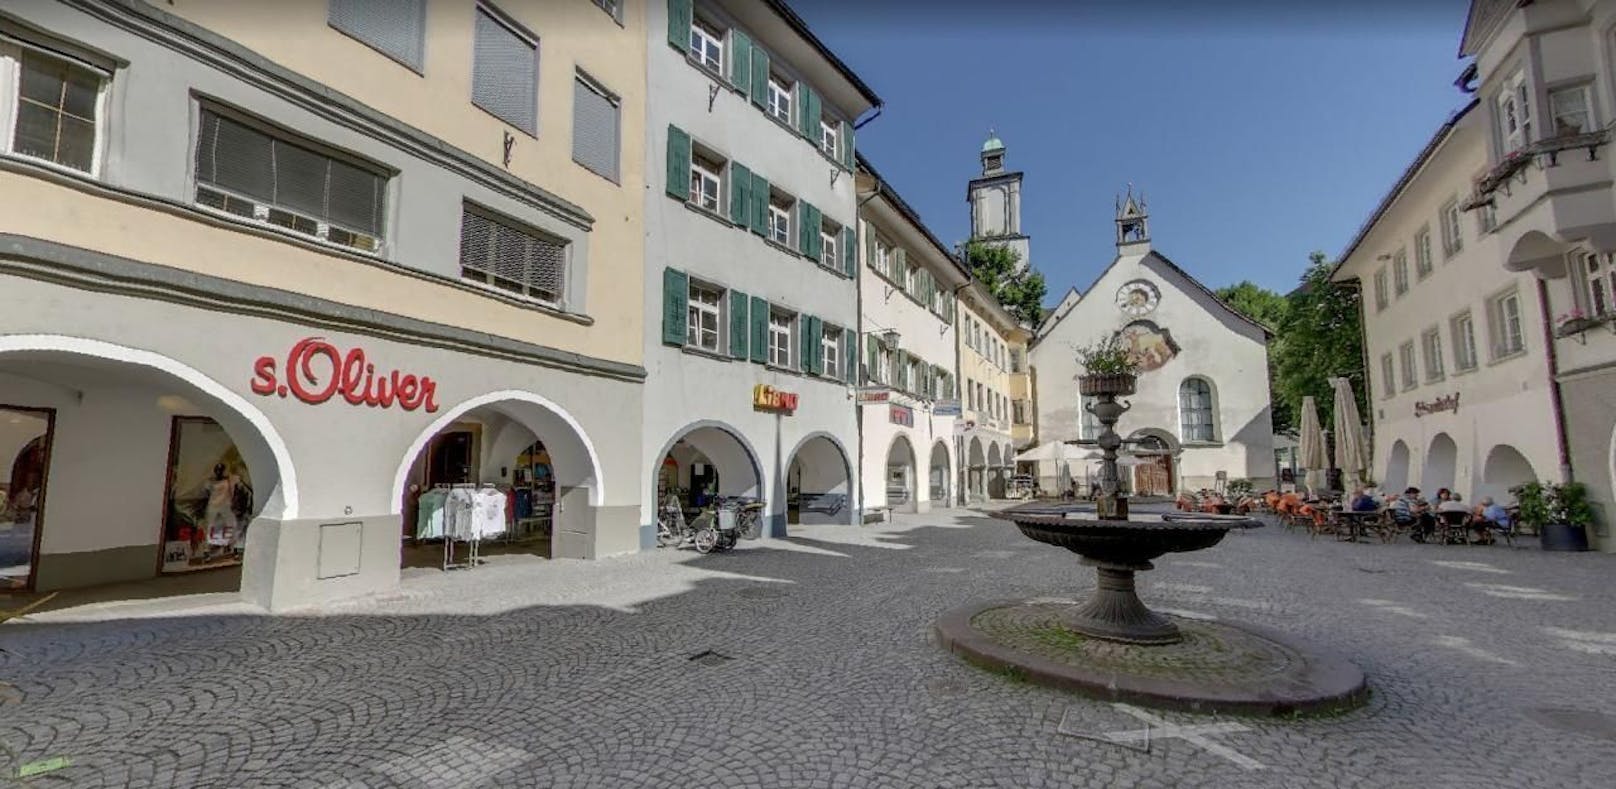 In der Innenstadt von Feldkirch kam es zur Attacke.